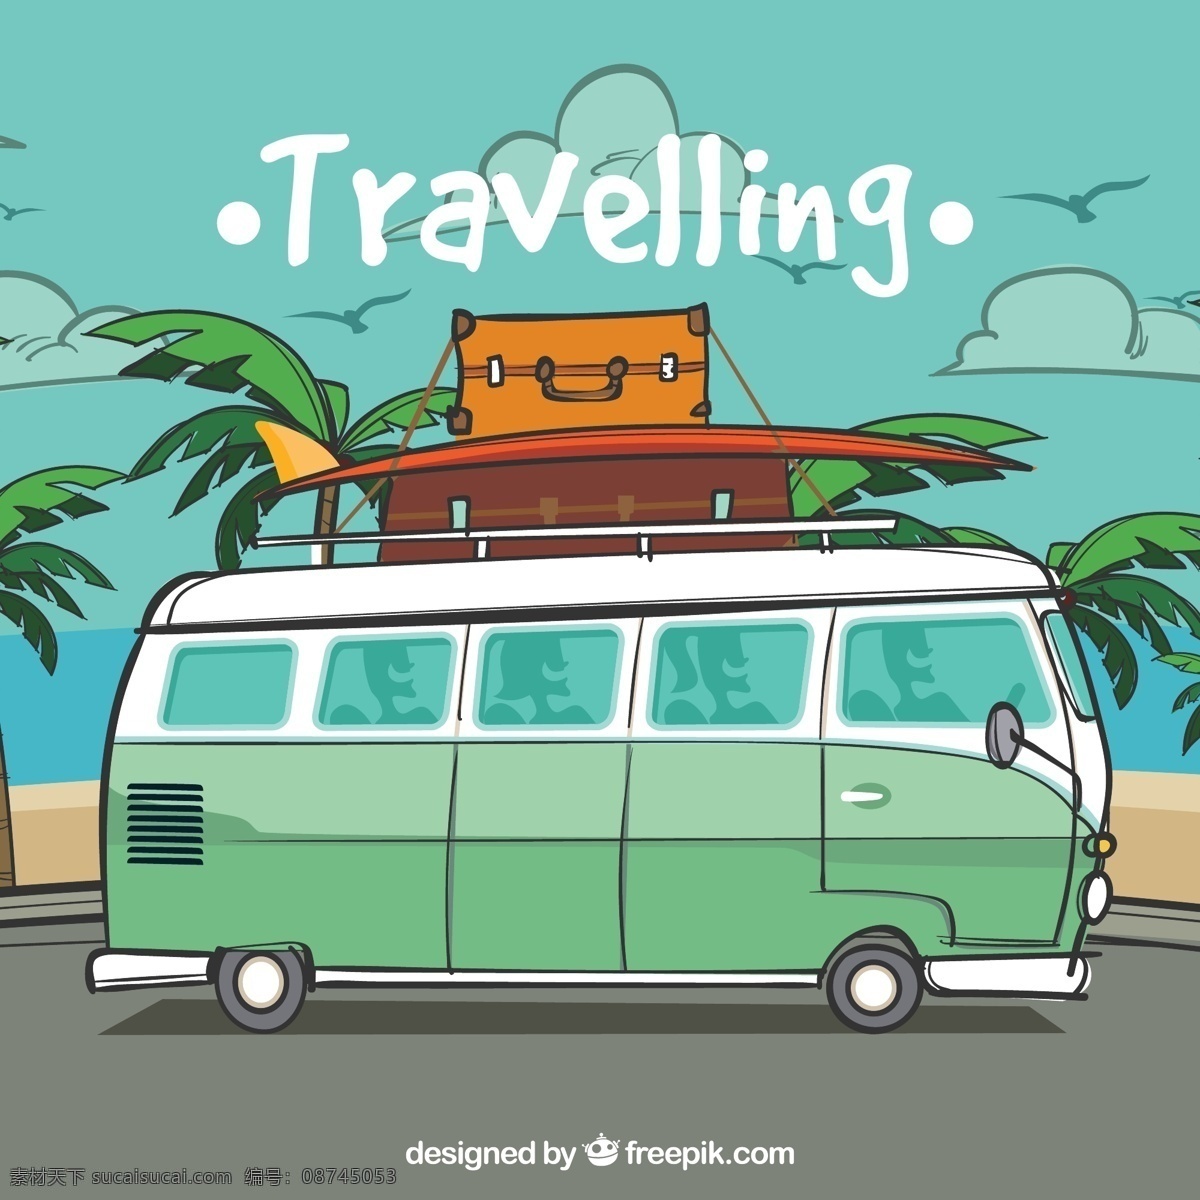 彩绘 海边 度假 巴士 矢量 海鸥 云朵 棕榈树 行李箱 椰子树 冲浪板 大海 客车 沙滩 动漫动画 风景漫画